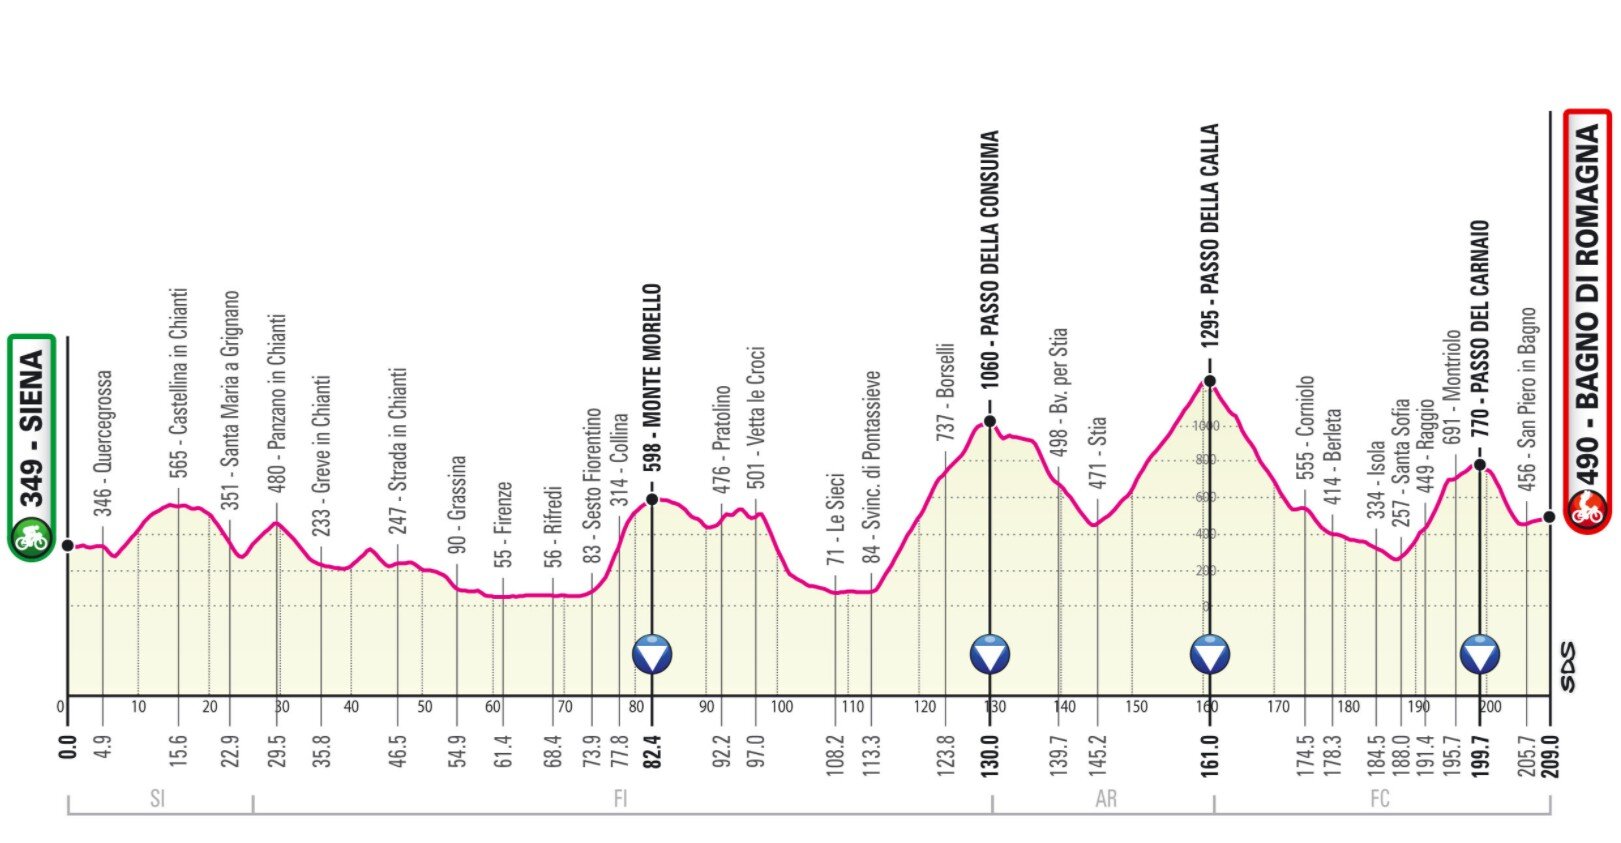 Stage 12 Giro Italia 2021